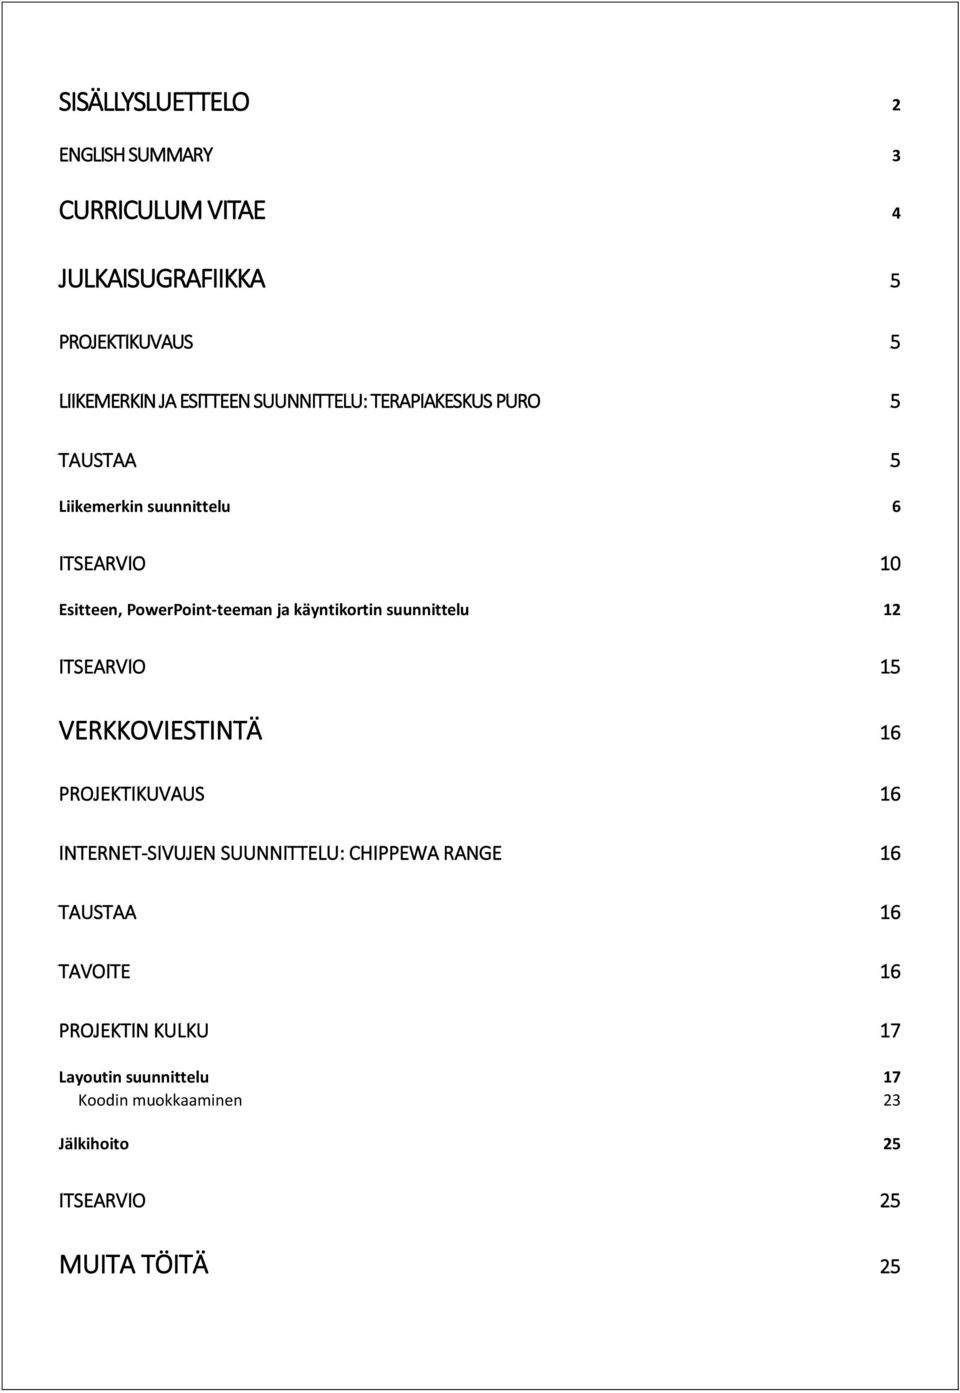 käyntikortin suunnittelu 12 ITSEARVIO 15 VERKKOVIESTINTÄ 16 PROJEKTIKUVAUS 16 INTERNET-SIVUJEN SUUNNITTELU: CHIPPEWA